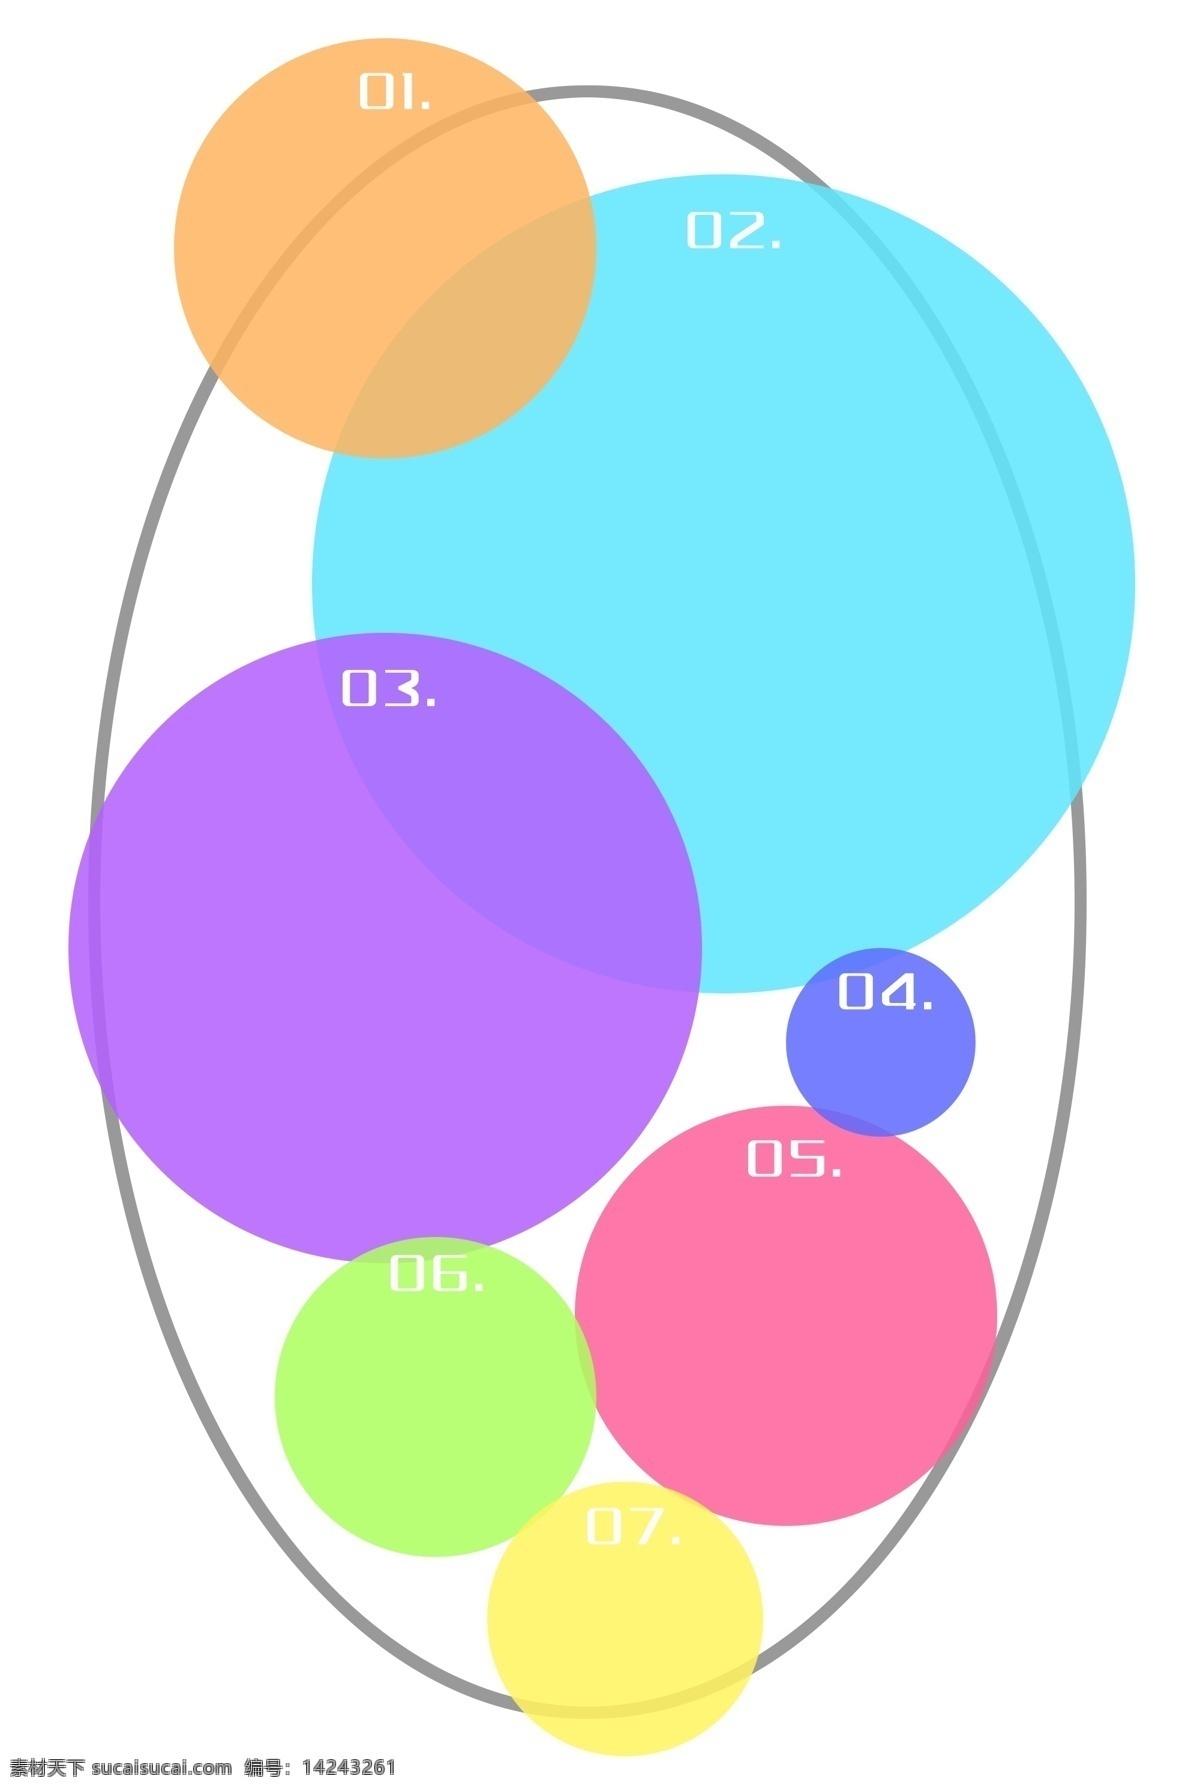 椭圆形 图表 插画 蓝色的图表 卡通插画 图表插画 宣传图表 通知图表 告知图表 椭圆形图表